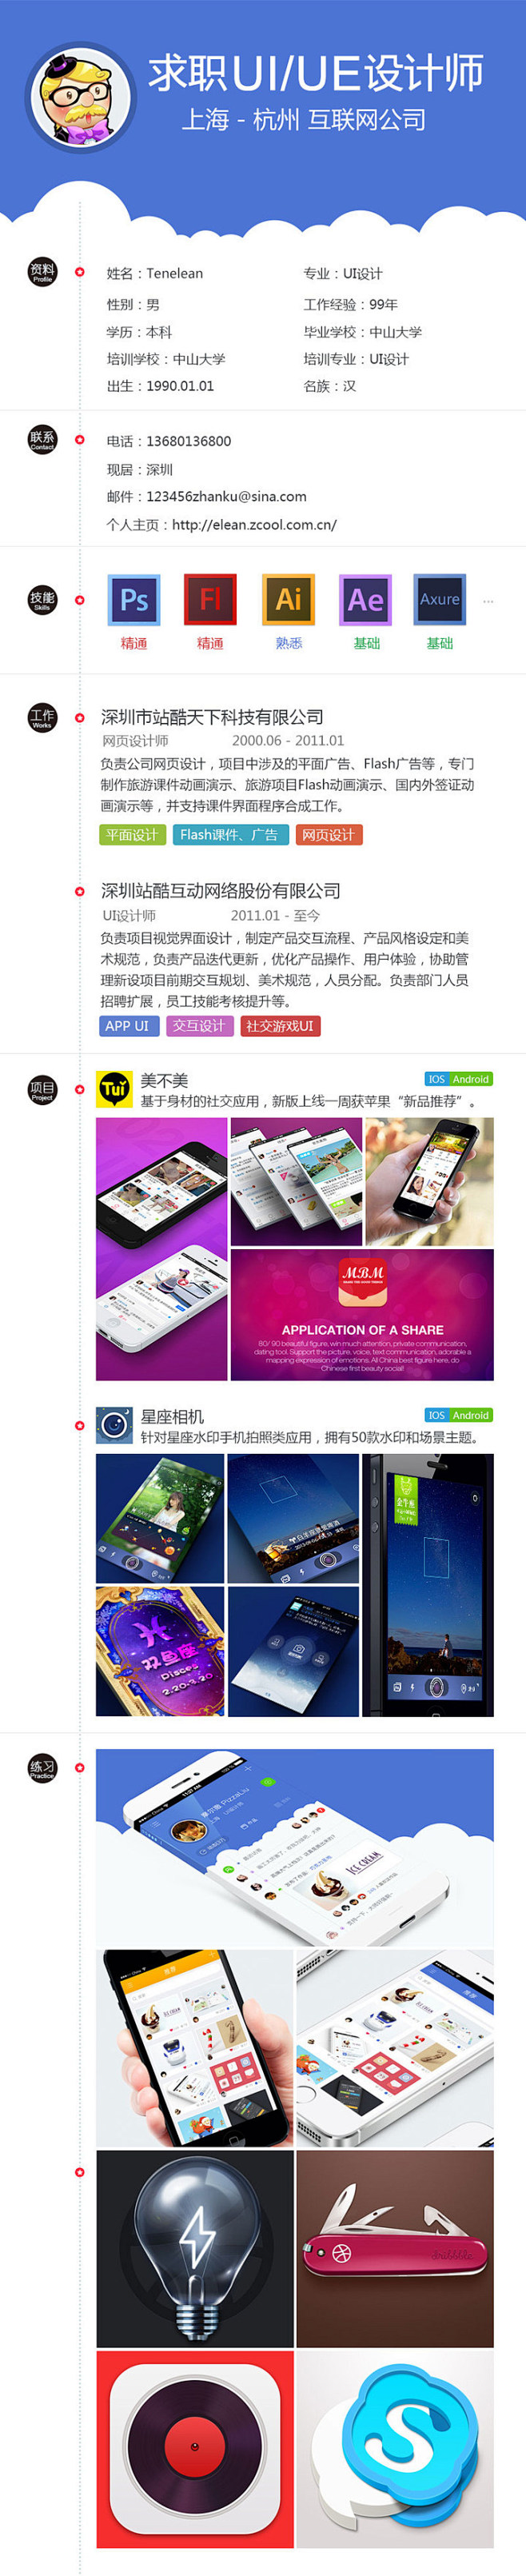 美事屋-简历-UI中国-专业界面设计平台